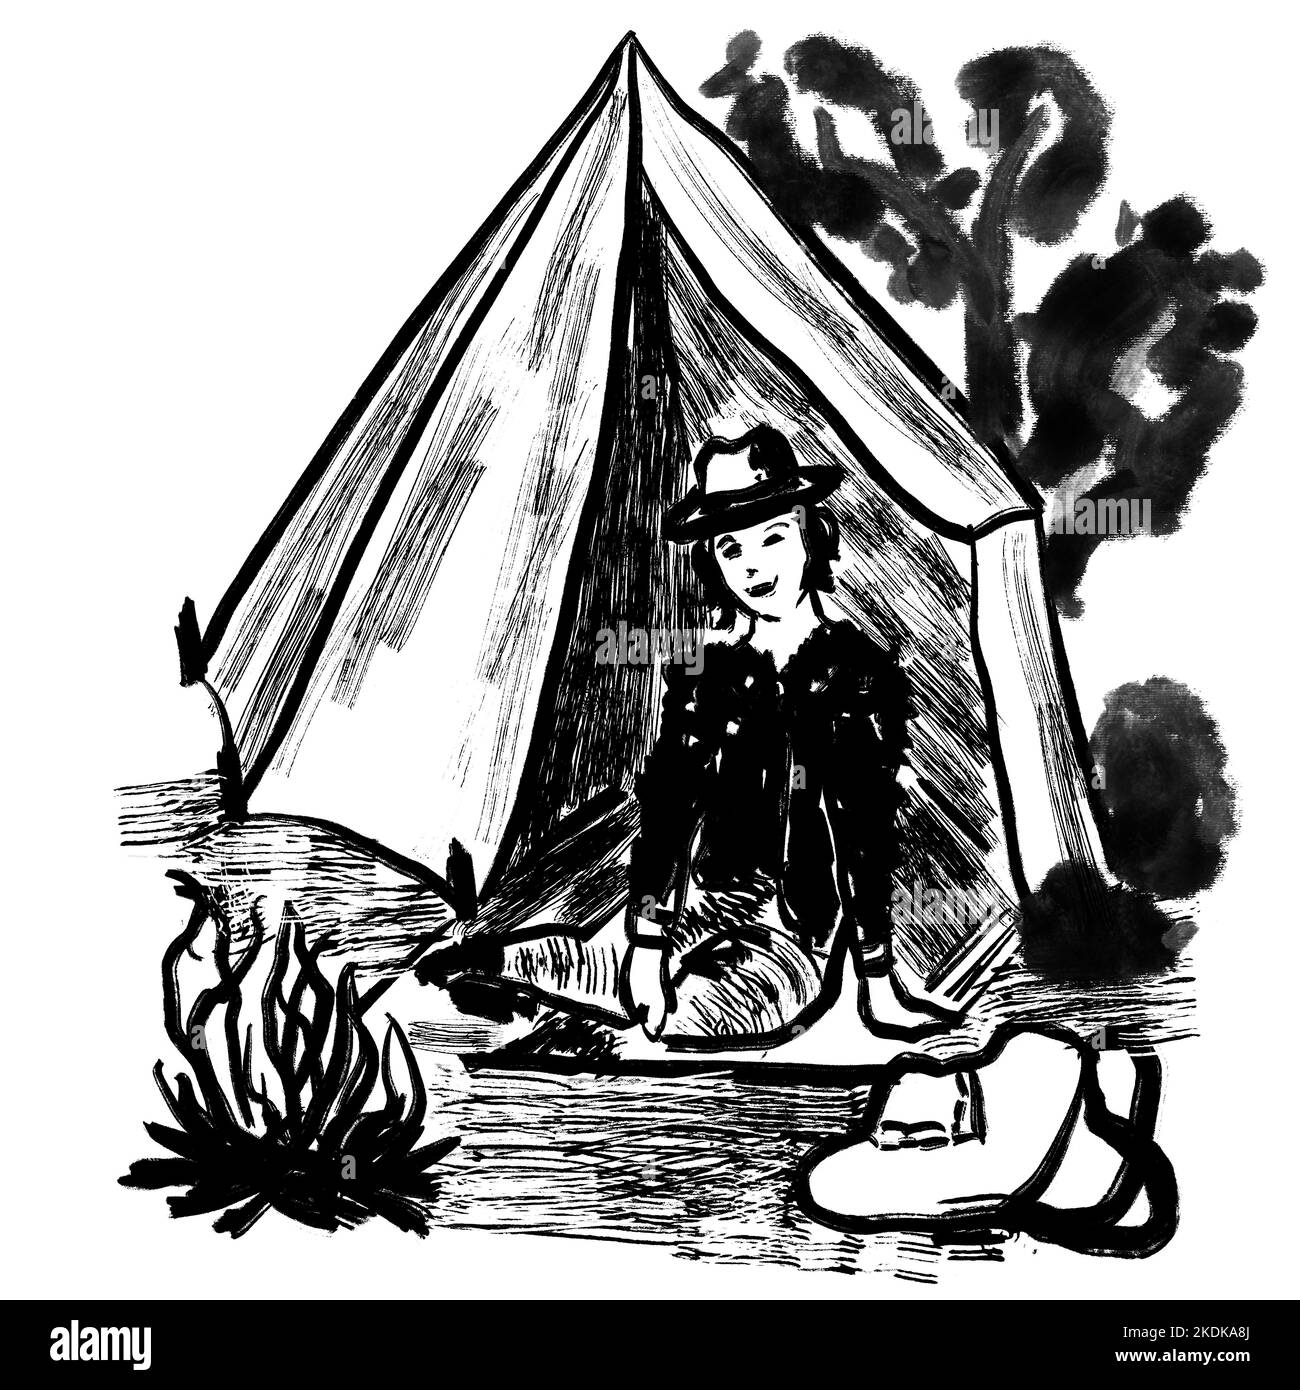 Handgezeichnete Illustration einer Frau, die im Zelt mit Lagerfeuersack campiert, Bäume im Freien. Schwarz-weiße Monocrome-Tinte Skizze Illustration, minimalistische Zeichnung mit einfachen Pinselstrichen Stockfoto